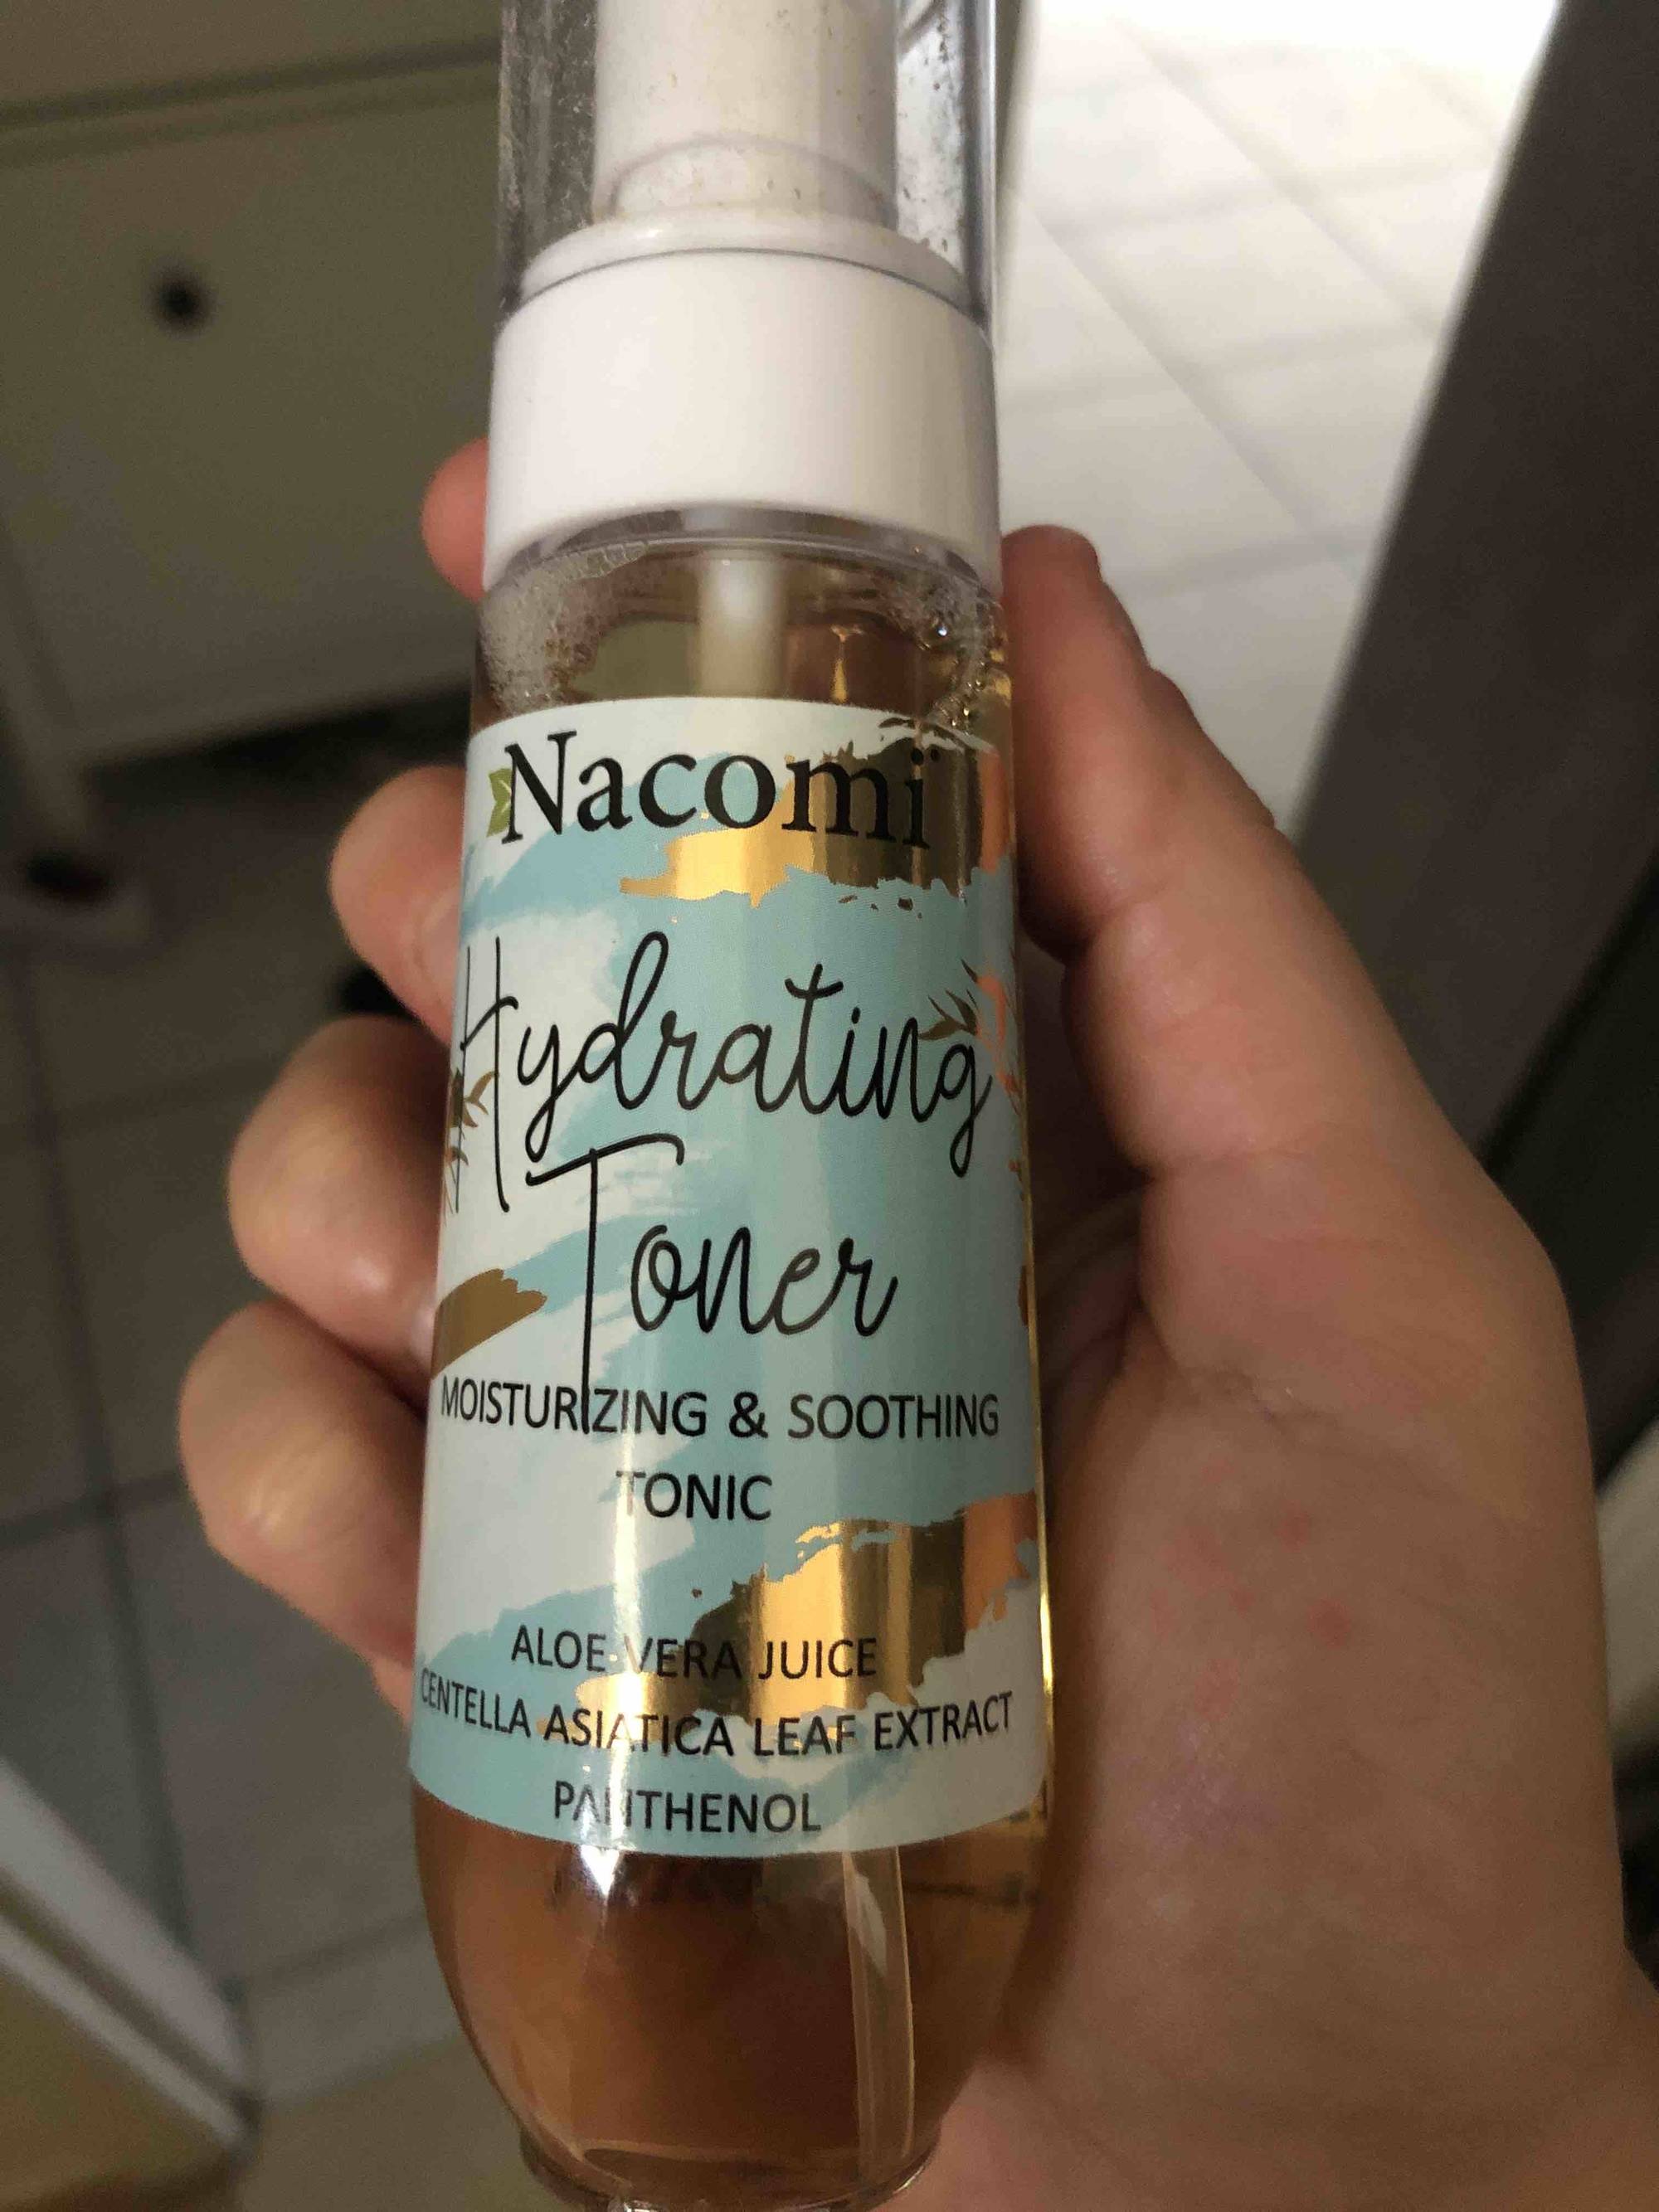 NACOMI - Hydrating toner - Moisturizing & soothing tonic